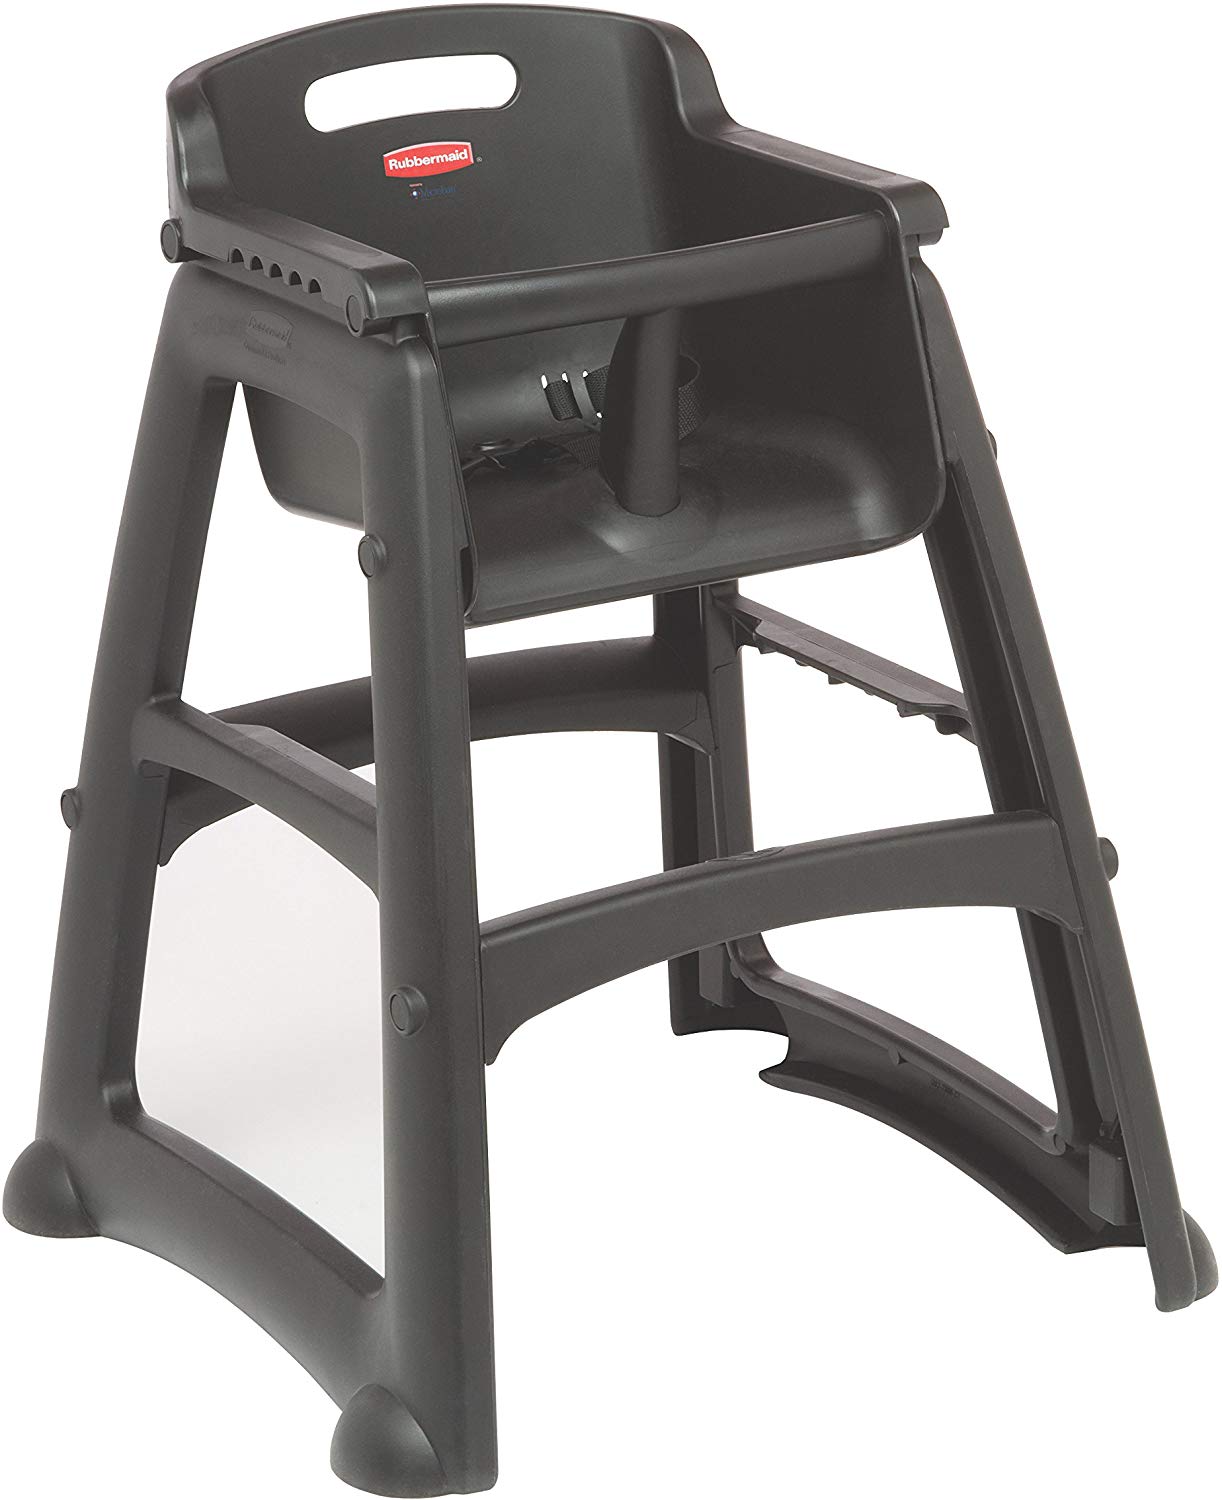 Rubbermaid Sturdy Chair Childrens Chair, Vb 007814 – Black